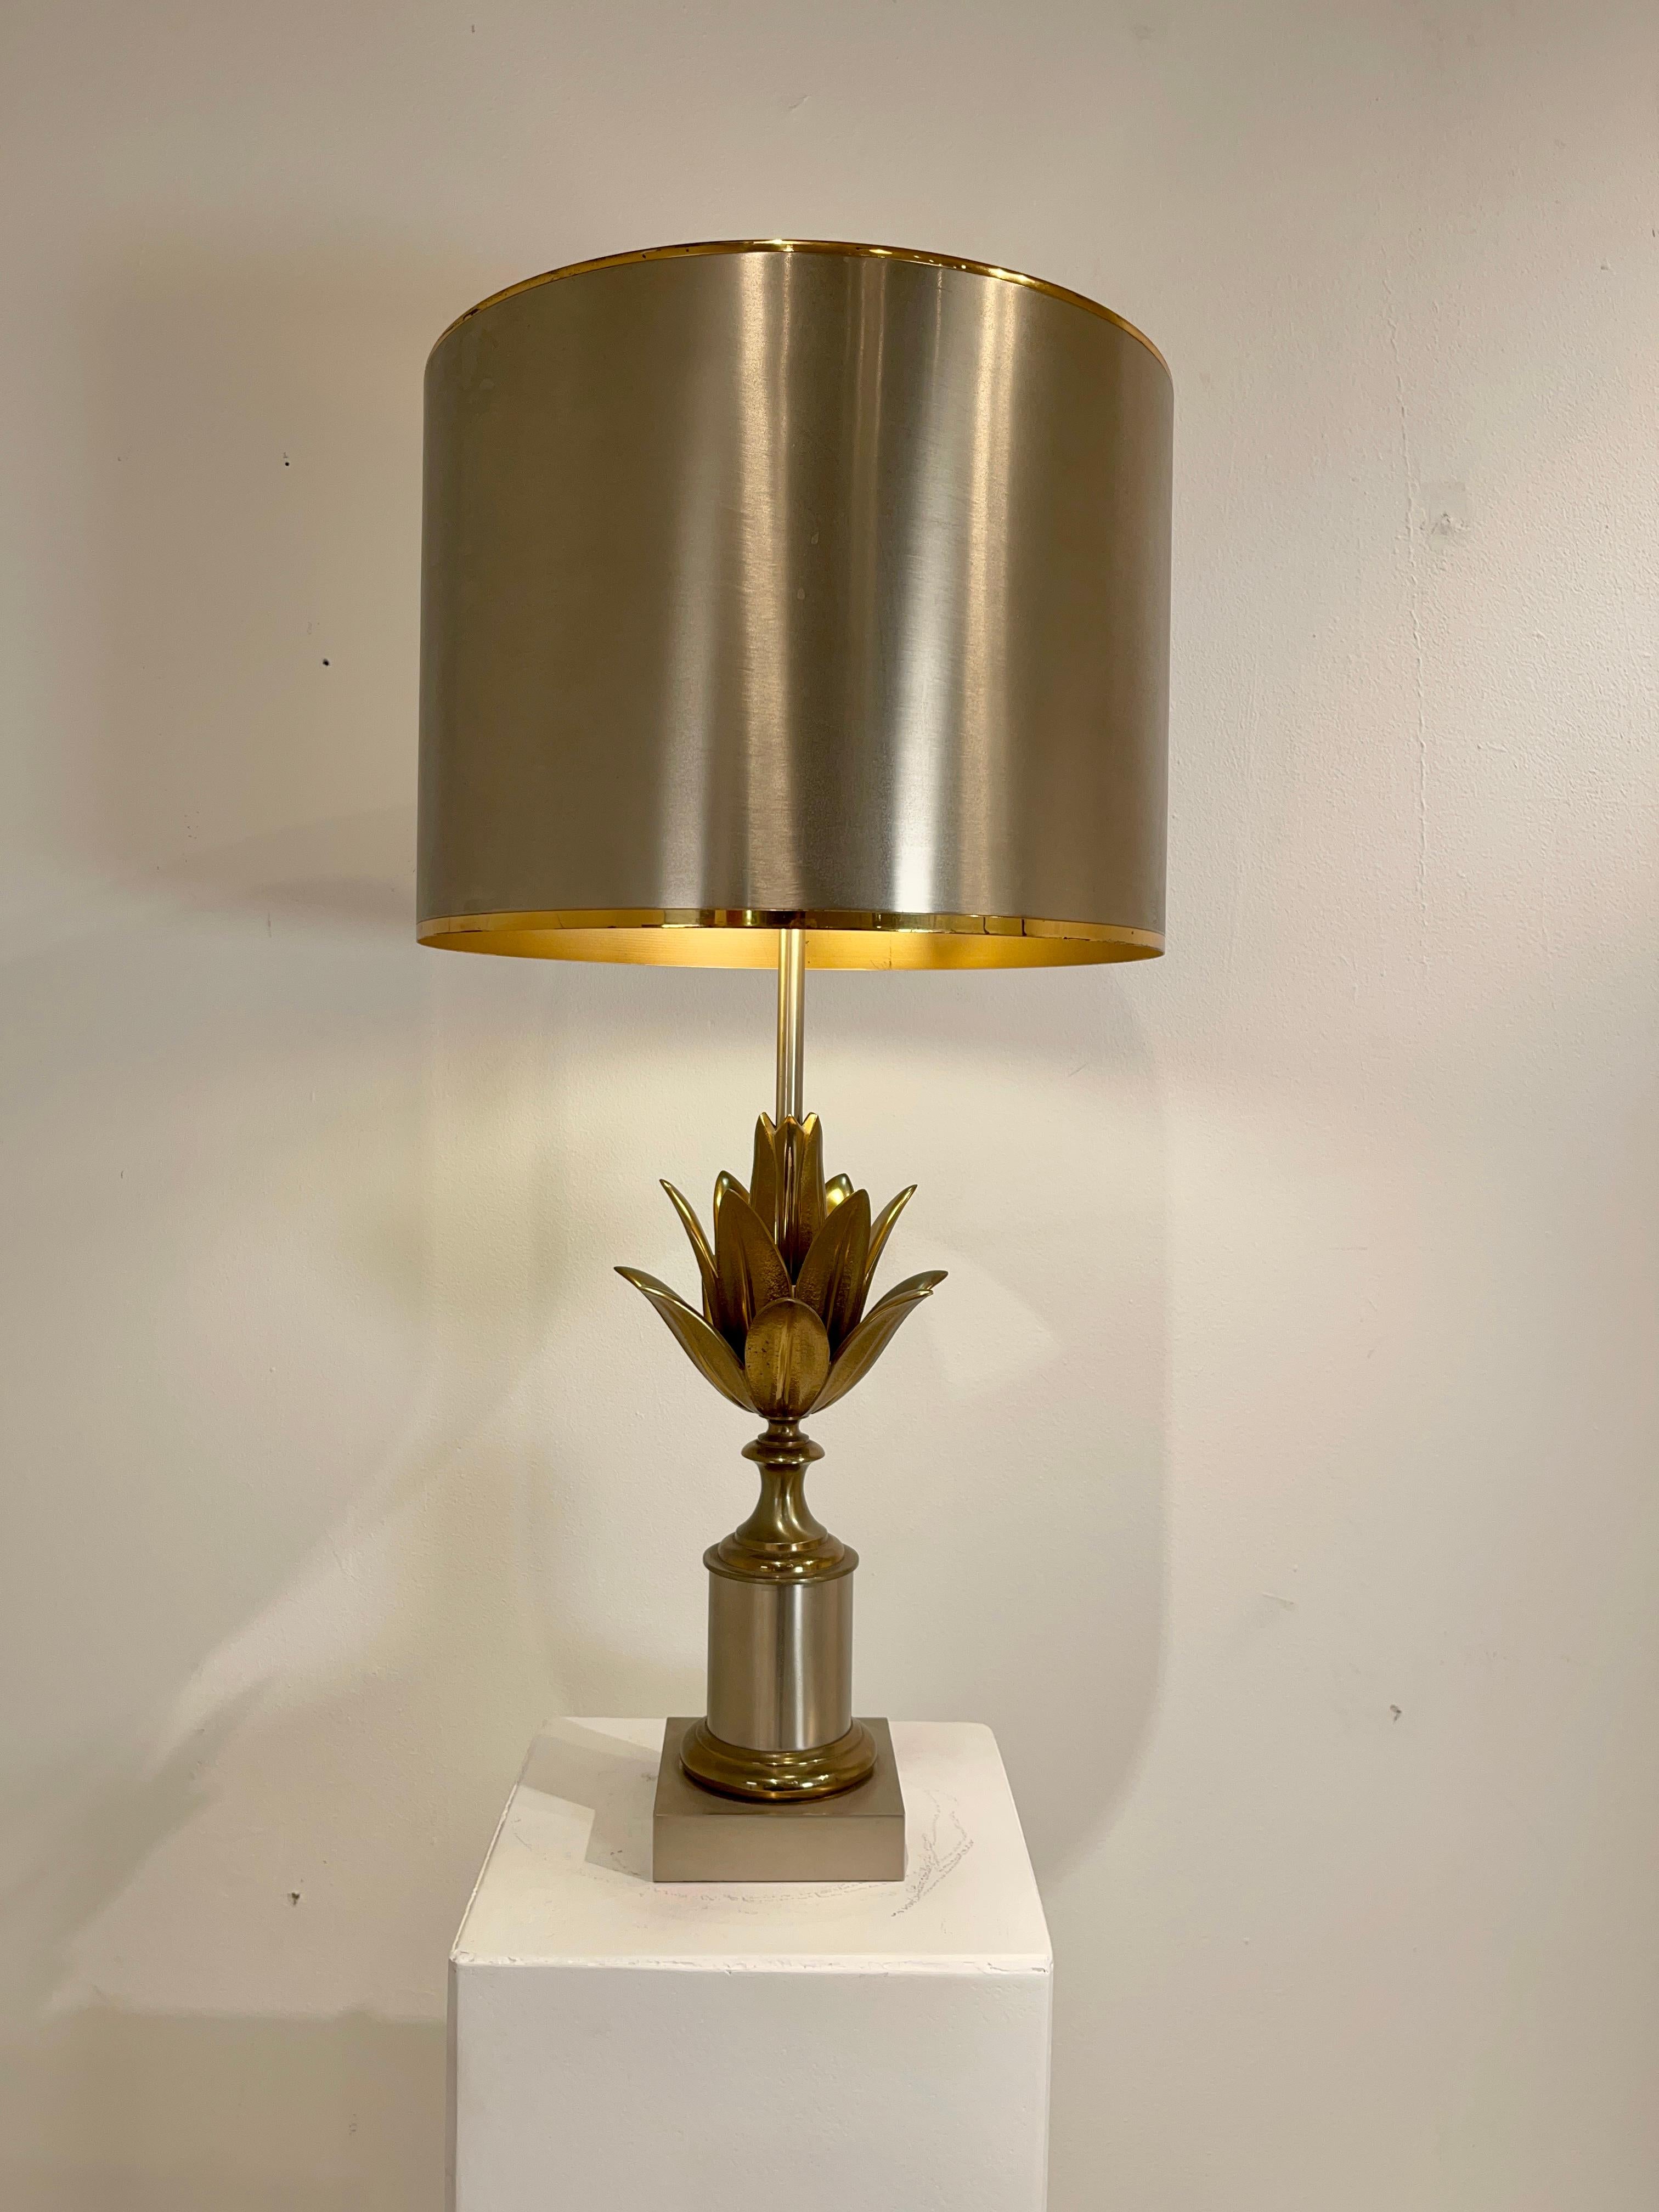 Lampe de table de la Maison Charles Modèle Lotus dans ses conditions d'origine, estampillée sur la base « Made in France Charles ». Parfait état.